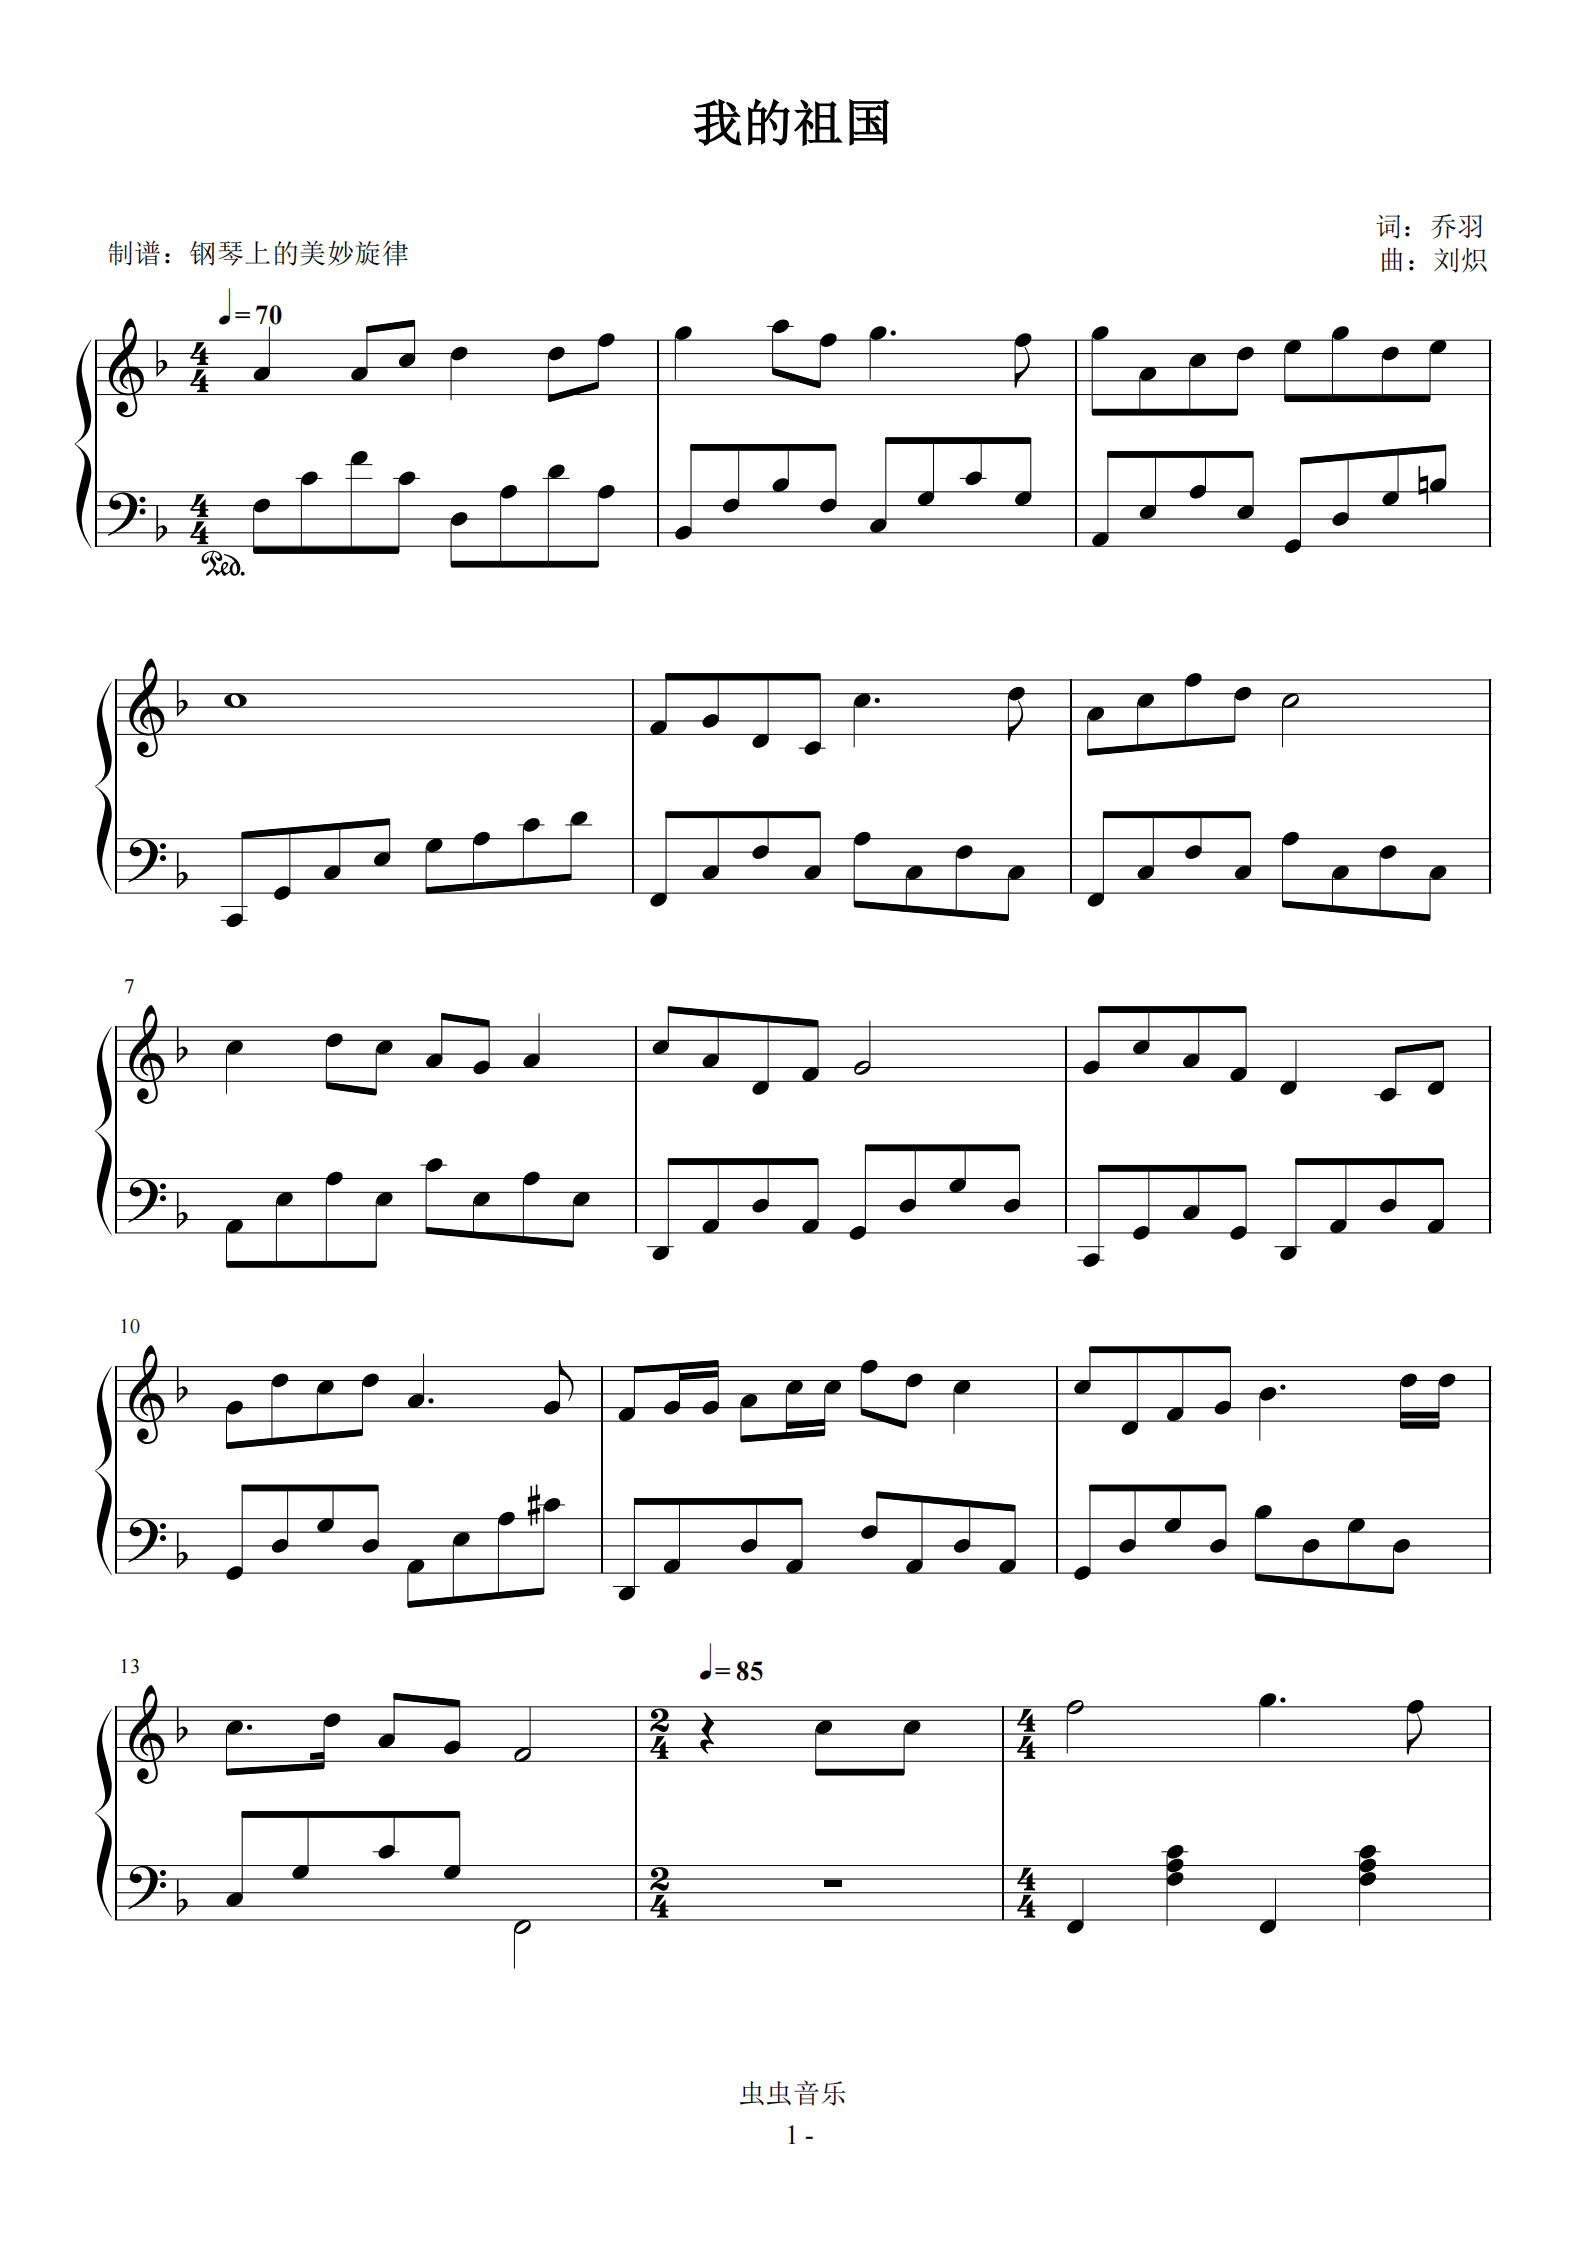 我的祖国 经典红歌 简易版钢琴谱